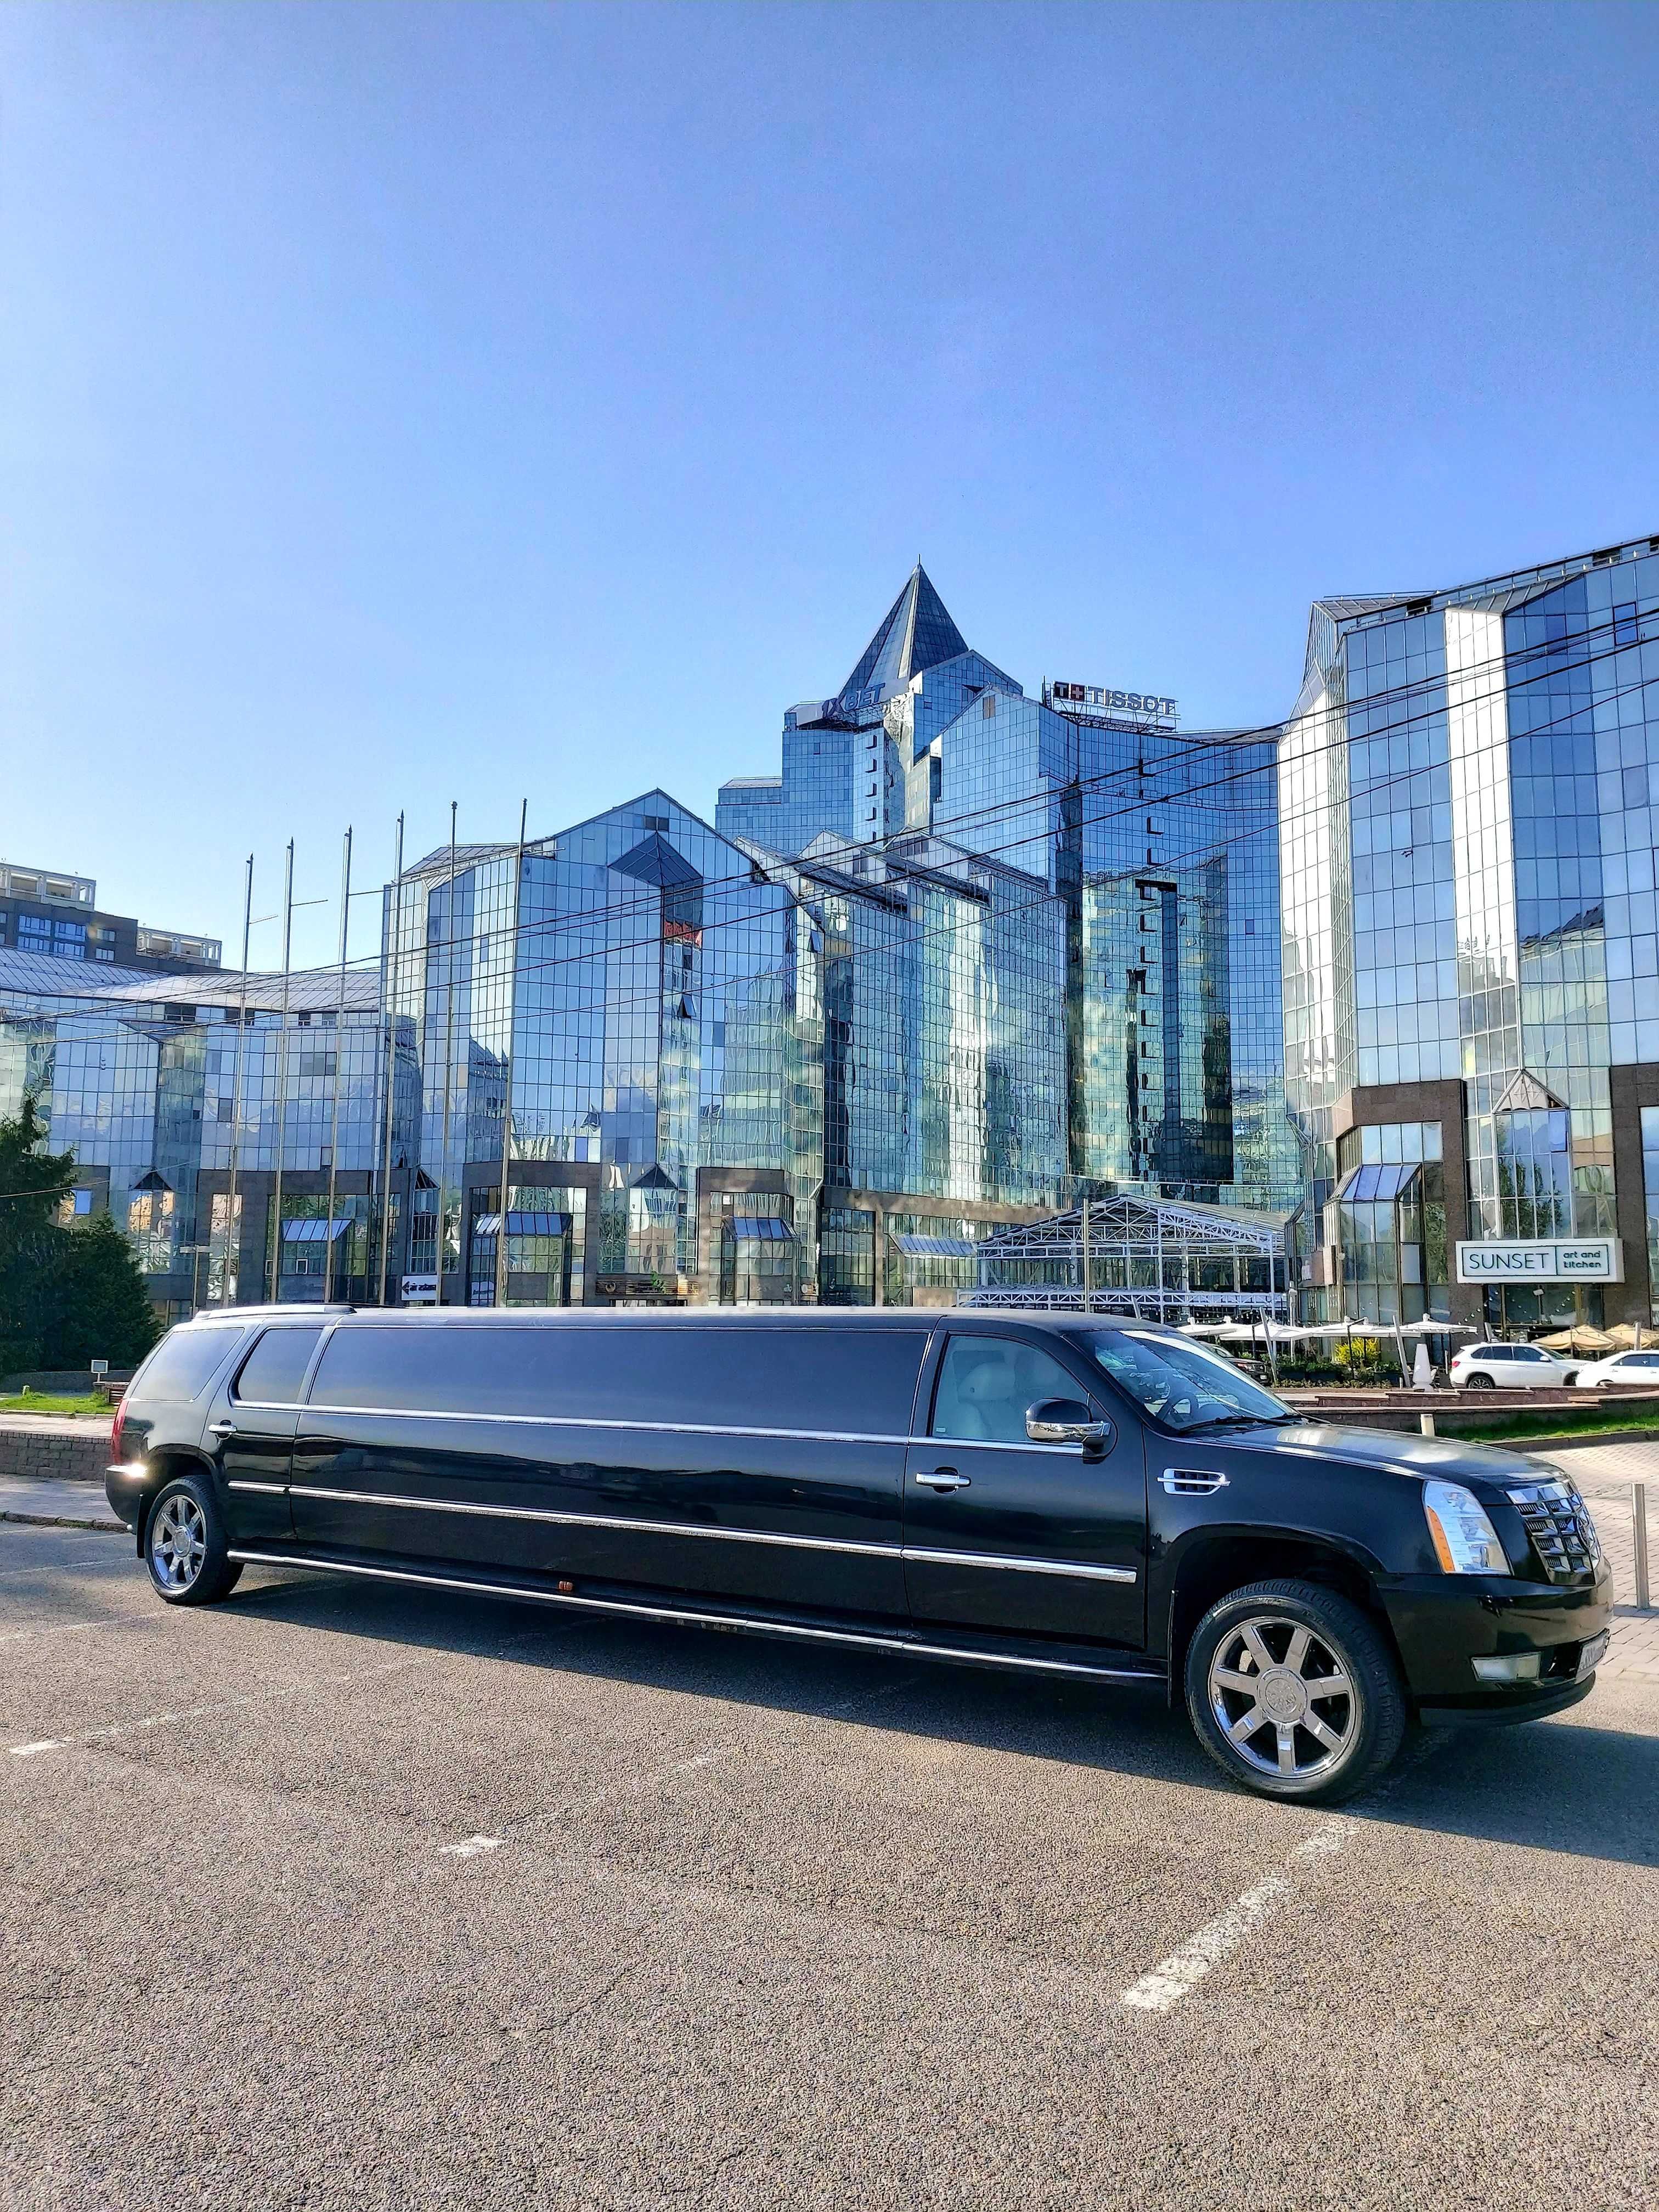 Лимузин Cadillac Escalade прокат в Алматы